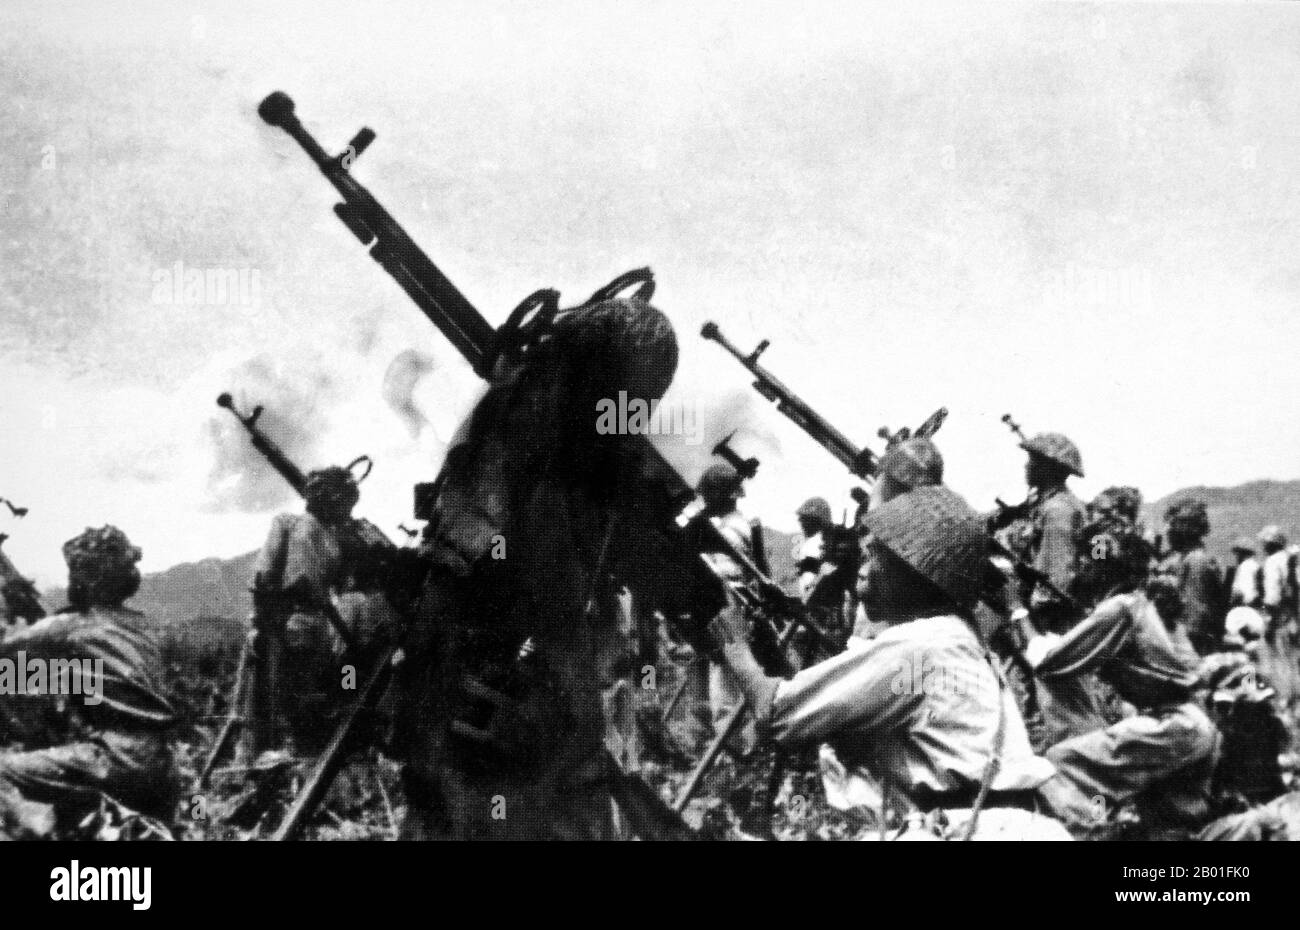 Vietnam : la division Viet Minh 308 lance un barrage de 12,7mm tirs anti-aériens sur des avions français, Dien bien Phu, 1954. L'importante bataille de Dien bien Phu a été menée entre le Việt Minh (dirigé par le général Vo Nguyen Giap) et l'Union française (dirigée par le général Henri Navarre, successeur du général Raoul Salan). Le siège de la garnison française a duré cinquante-sept jours, de 5 h 30 sur 13 mars à 5 h 30 sur 7 mai 1954. L'avant-poste sud ou la base de feu du camp, Isabelle, n'a pas suivi l'ordre de cessez-le-feu et a combattu jusqu'au lendemain à 01 h 00. Banque D'Images